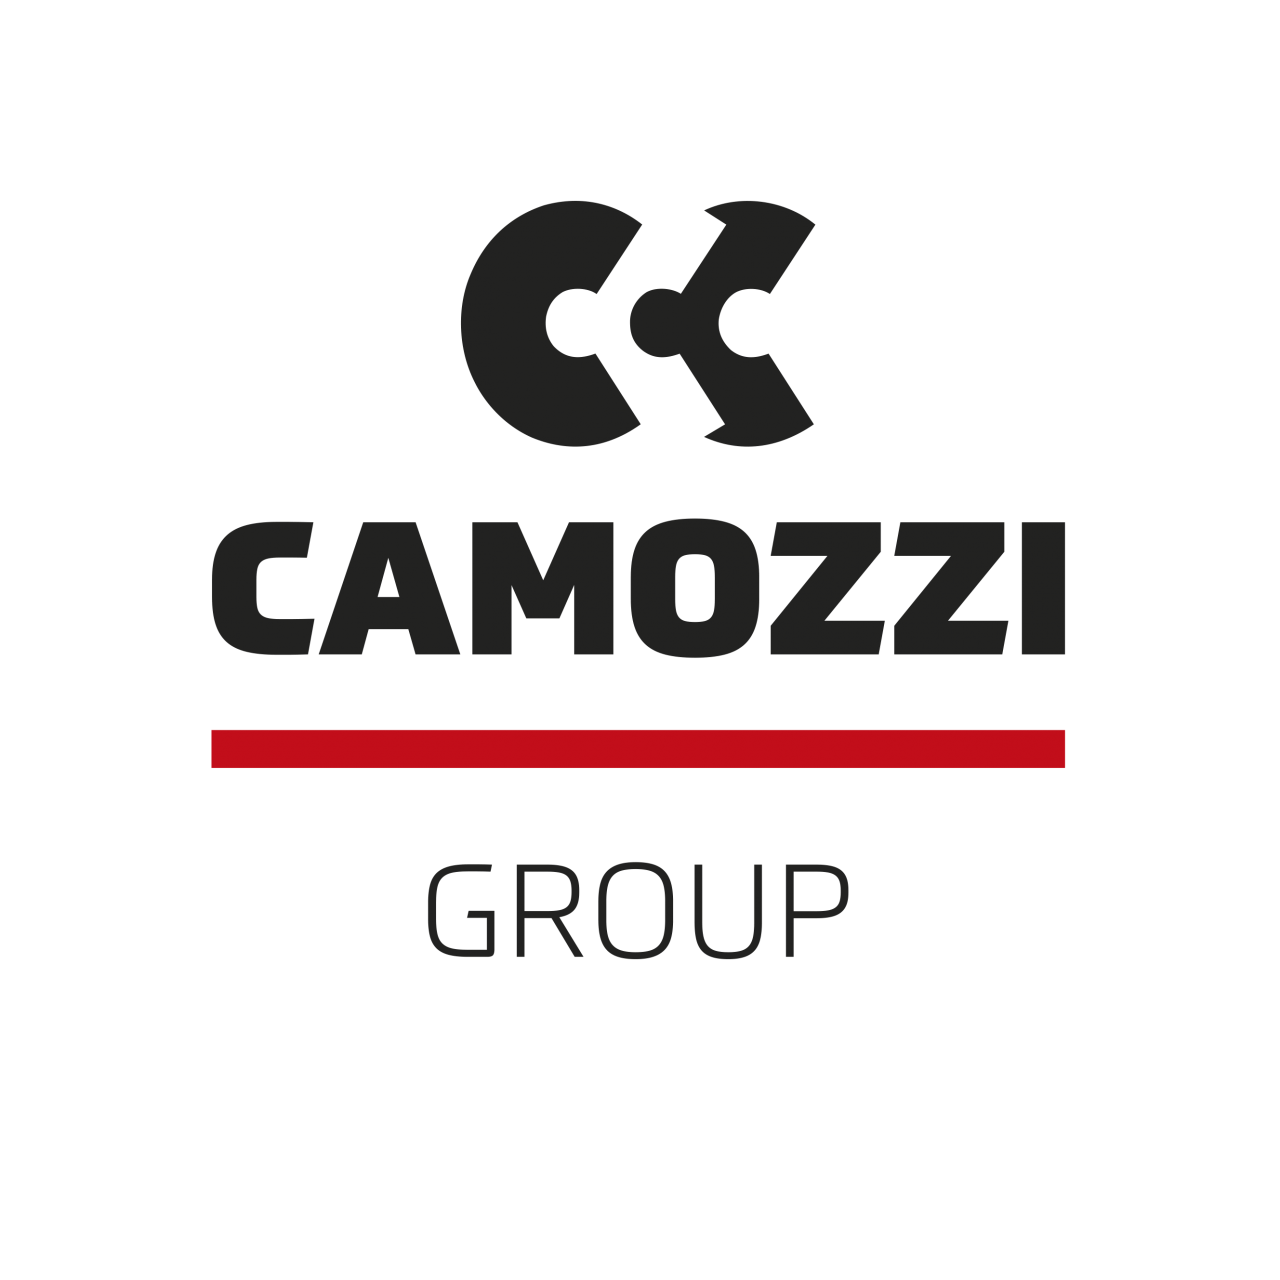 LG-Camozzi Group